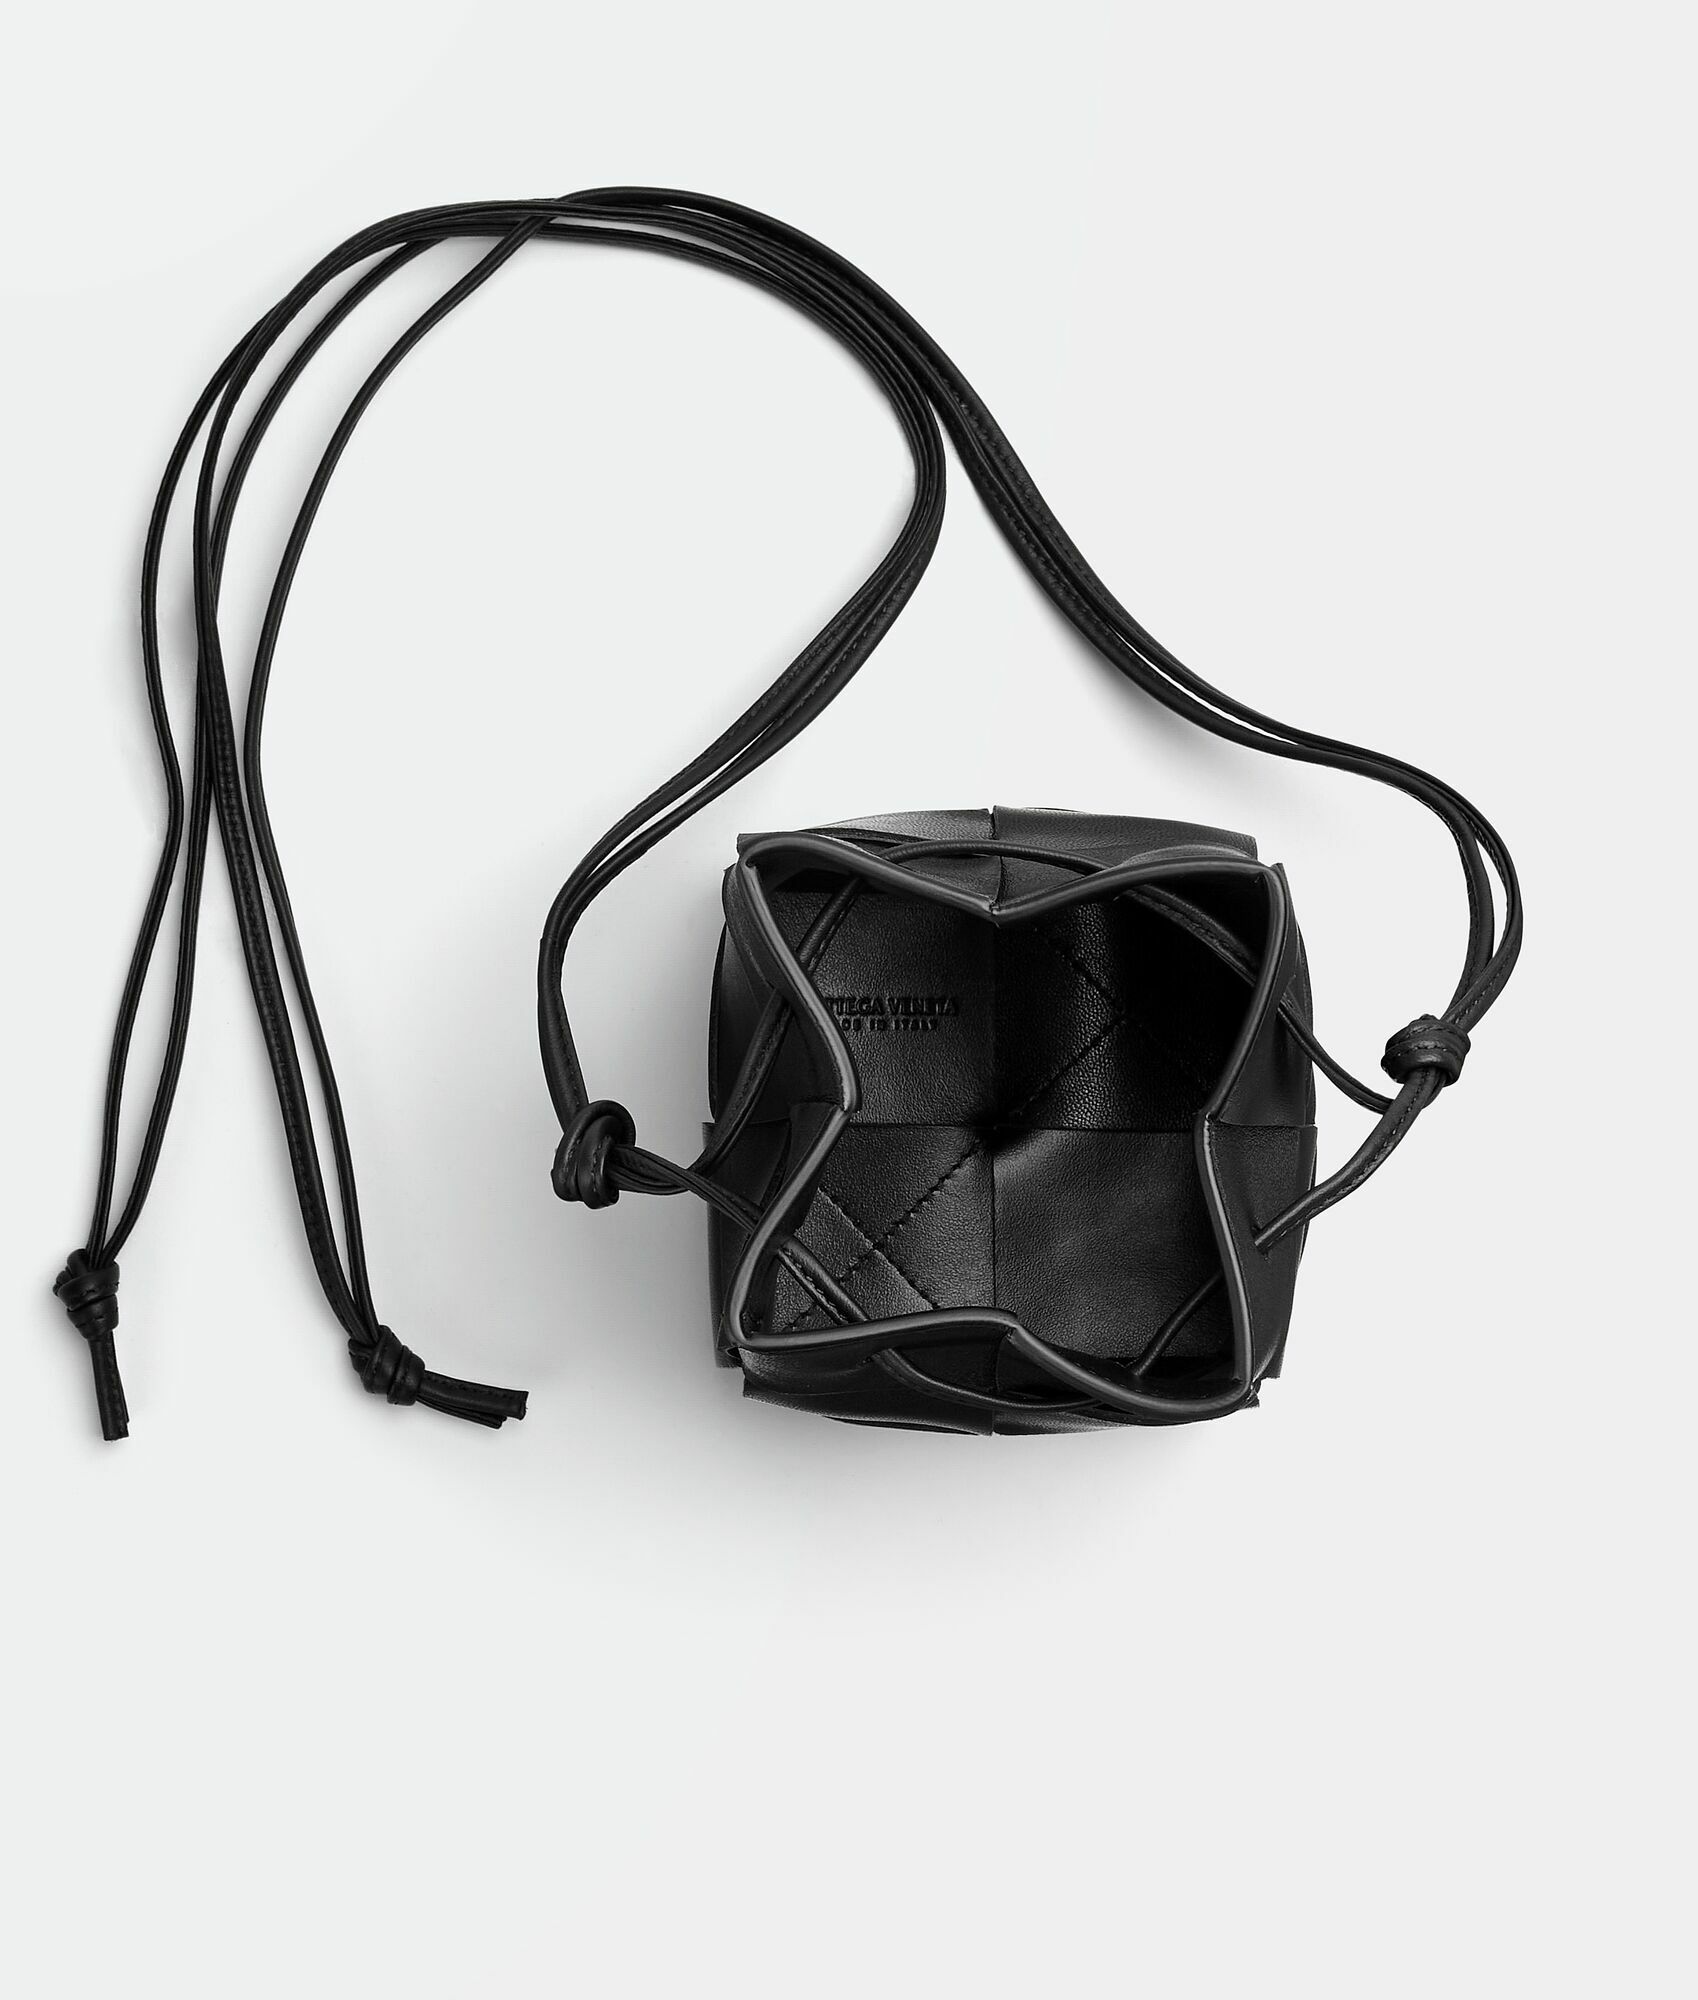 Bottega Veneta® Cassette Belt Bag in Black. Shop online now.